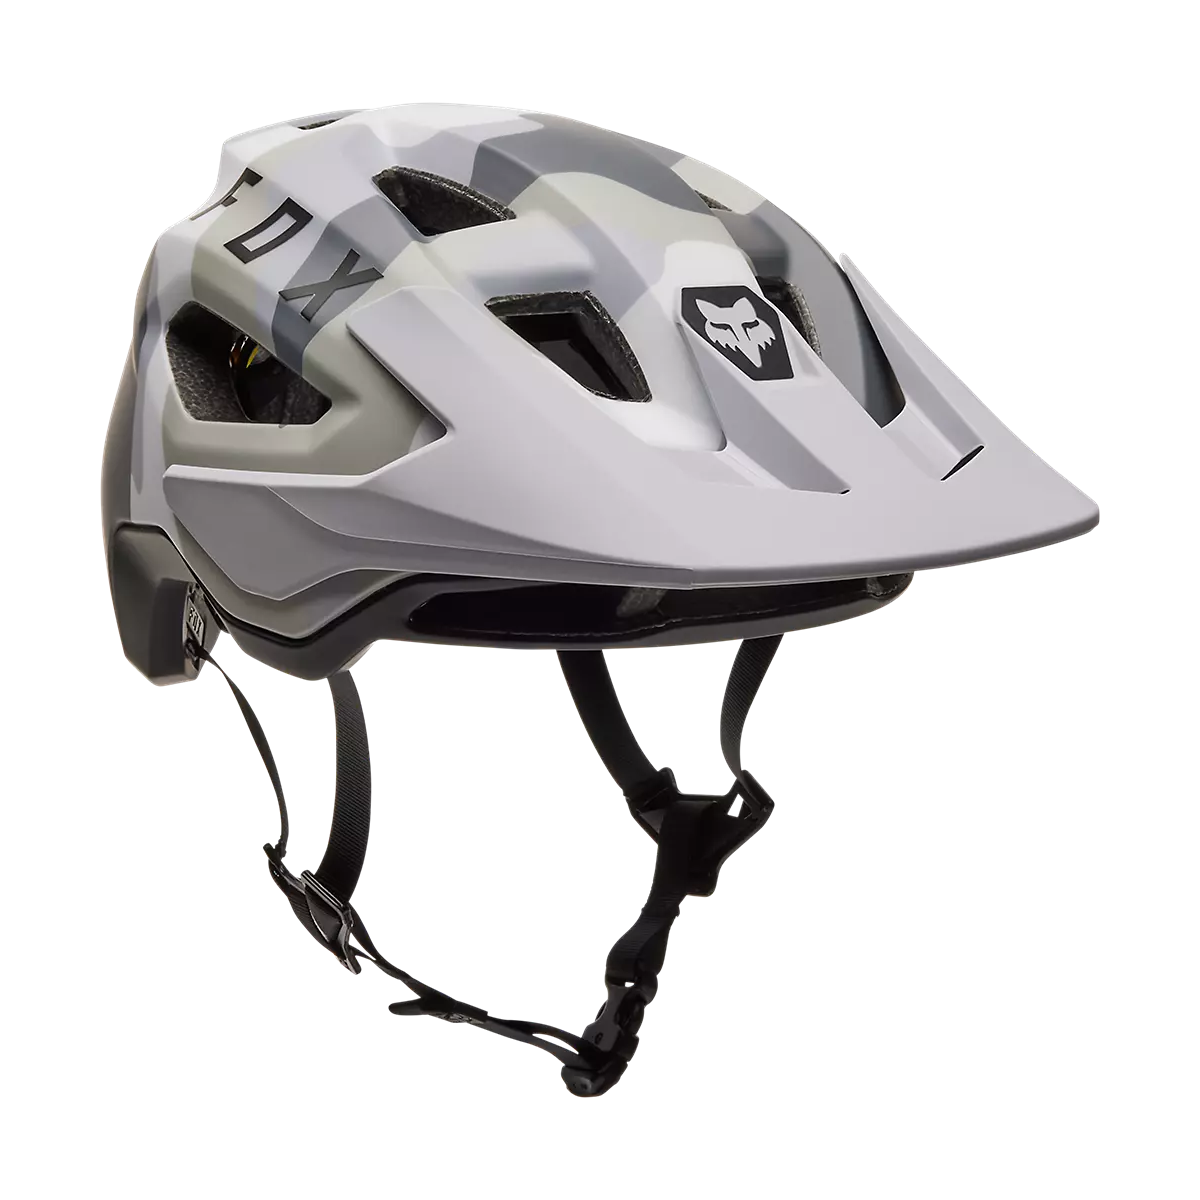 Casco de bicicleta enduro Fox Speedframe CAMO Mips en color camuflaje gris y blanco. 30654-033